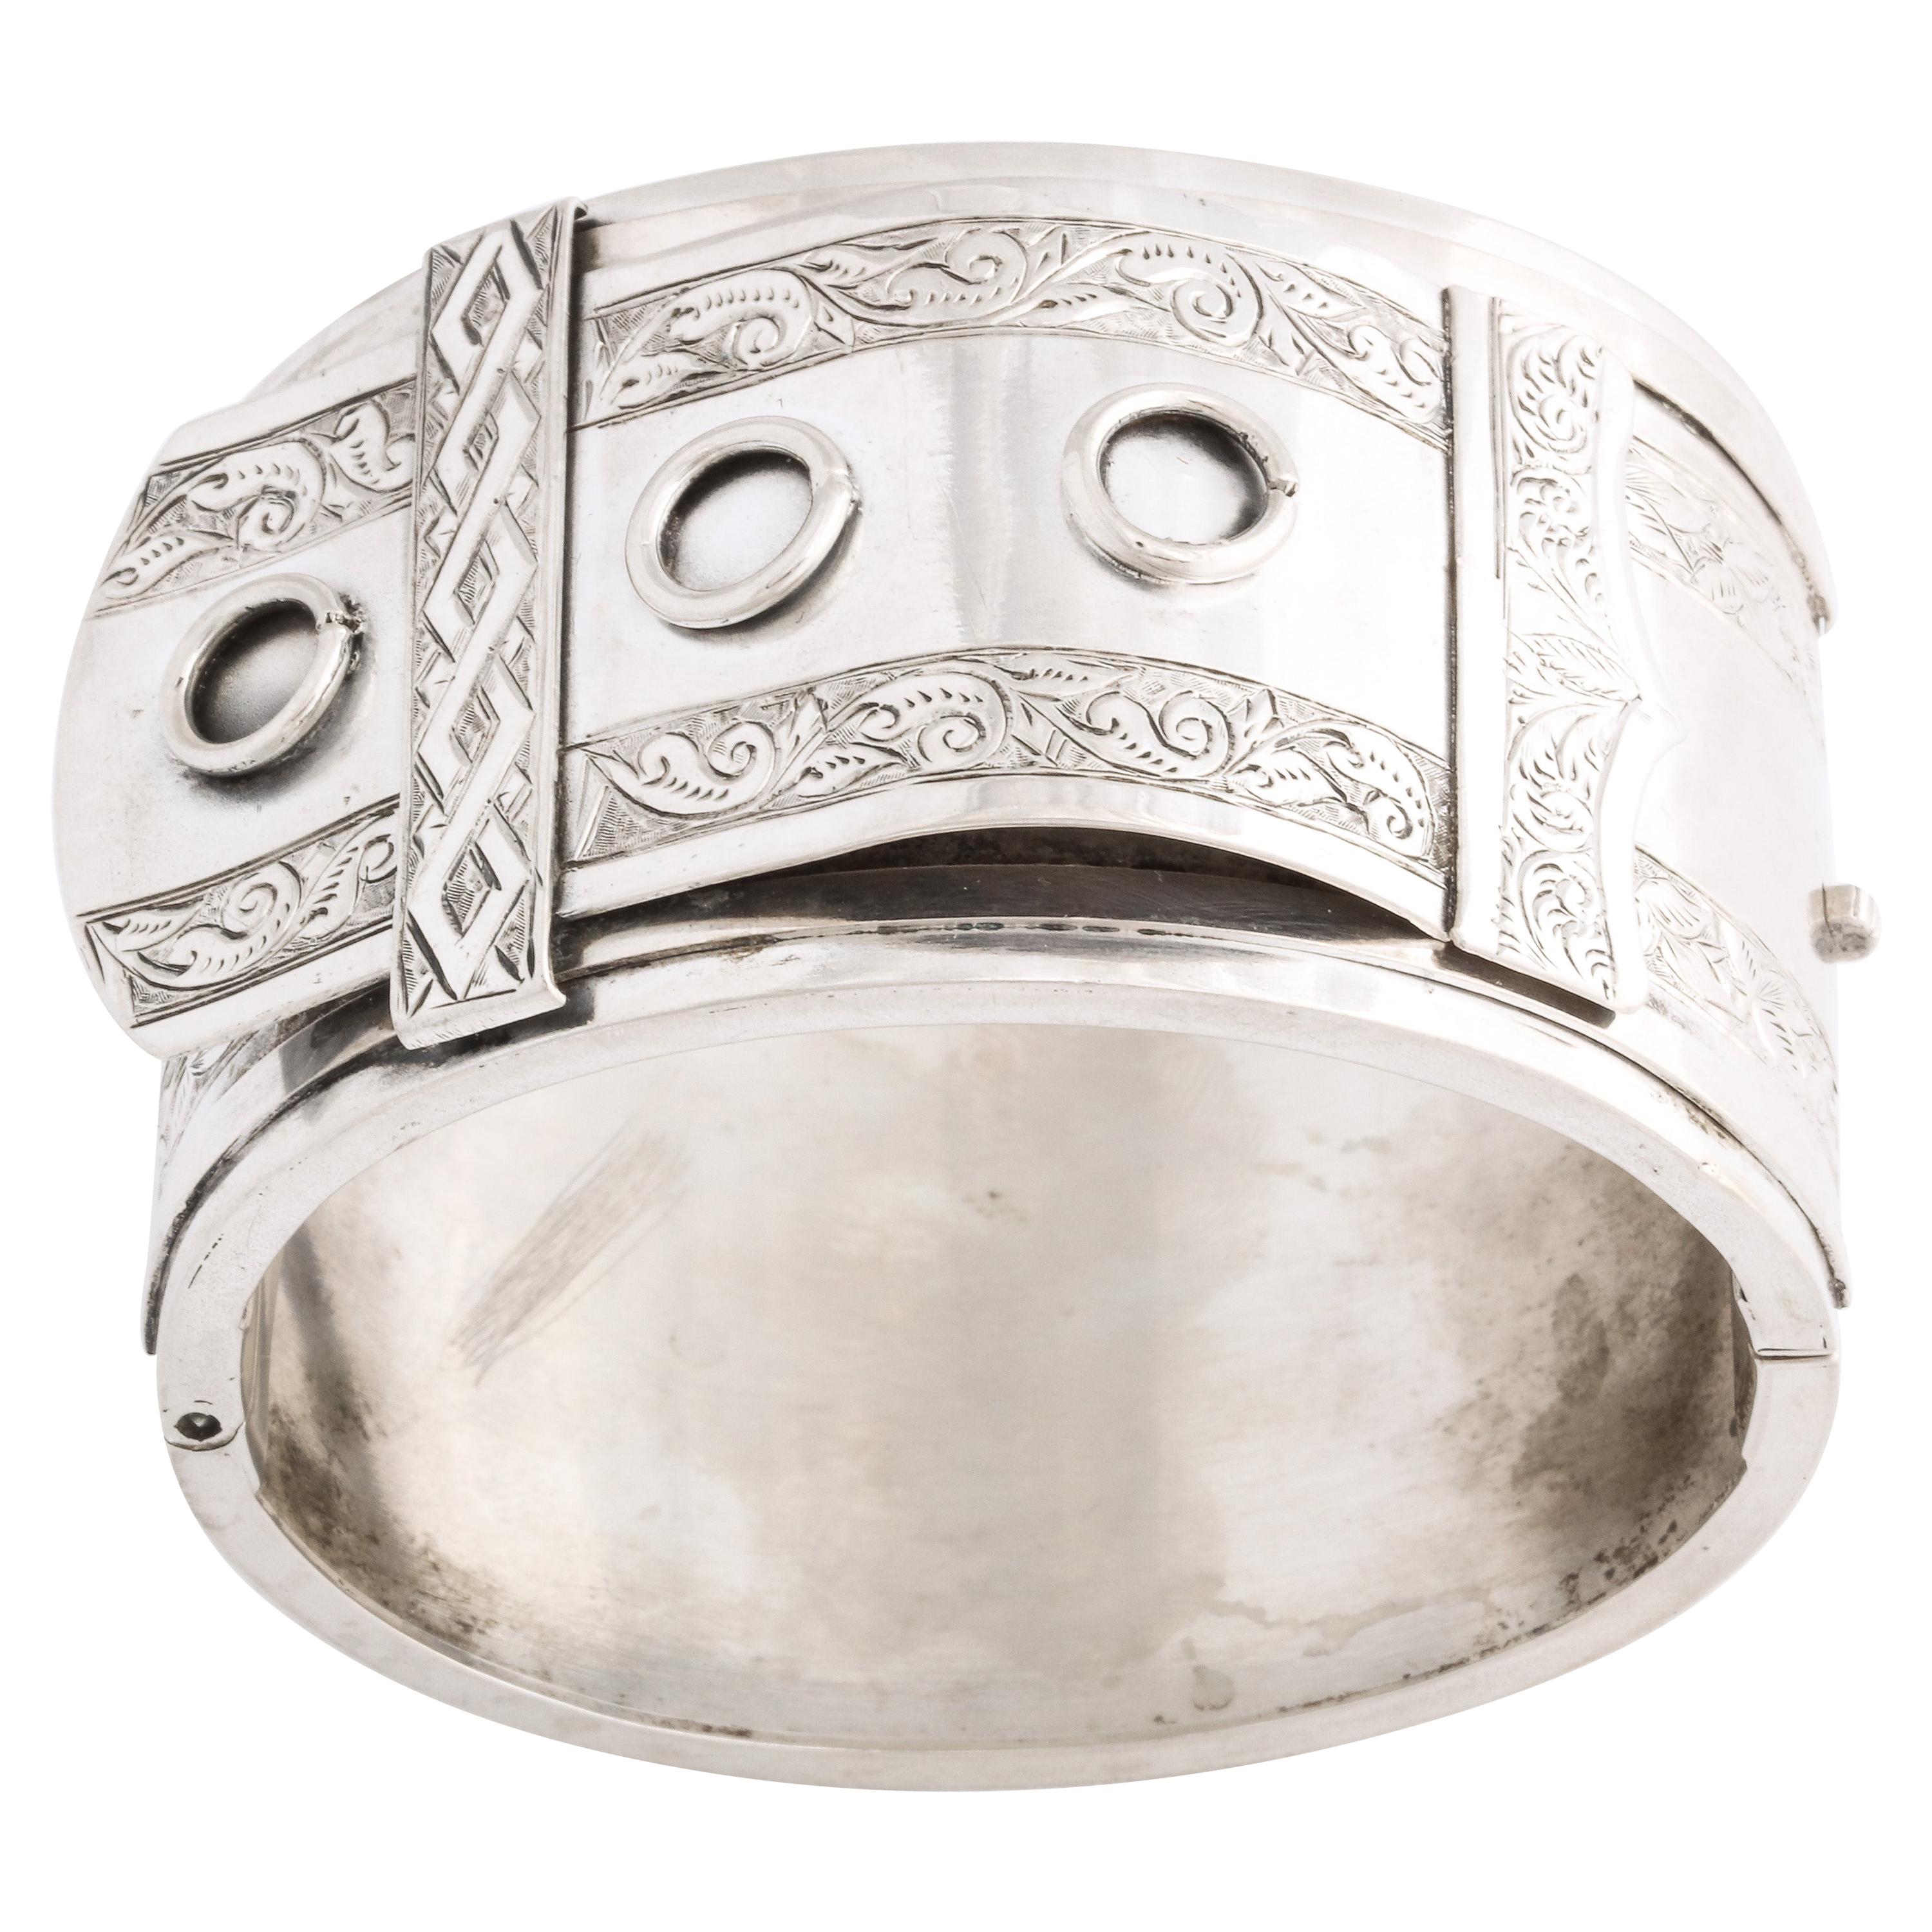 Victorian Silver Cuff In A Buckle Motif